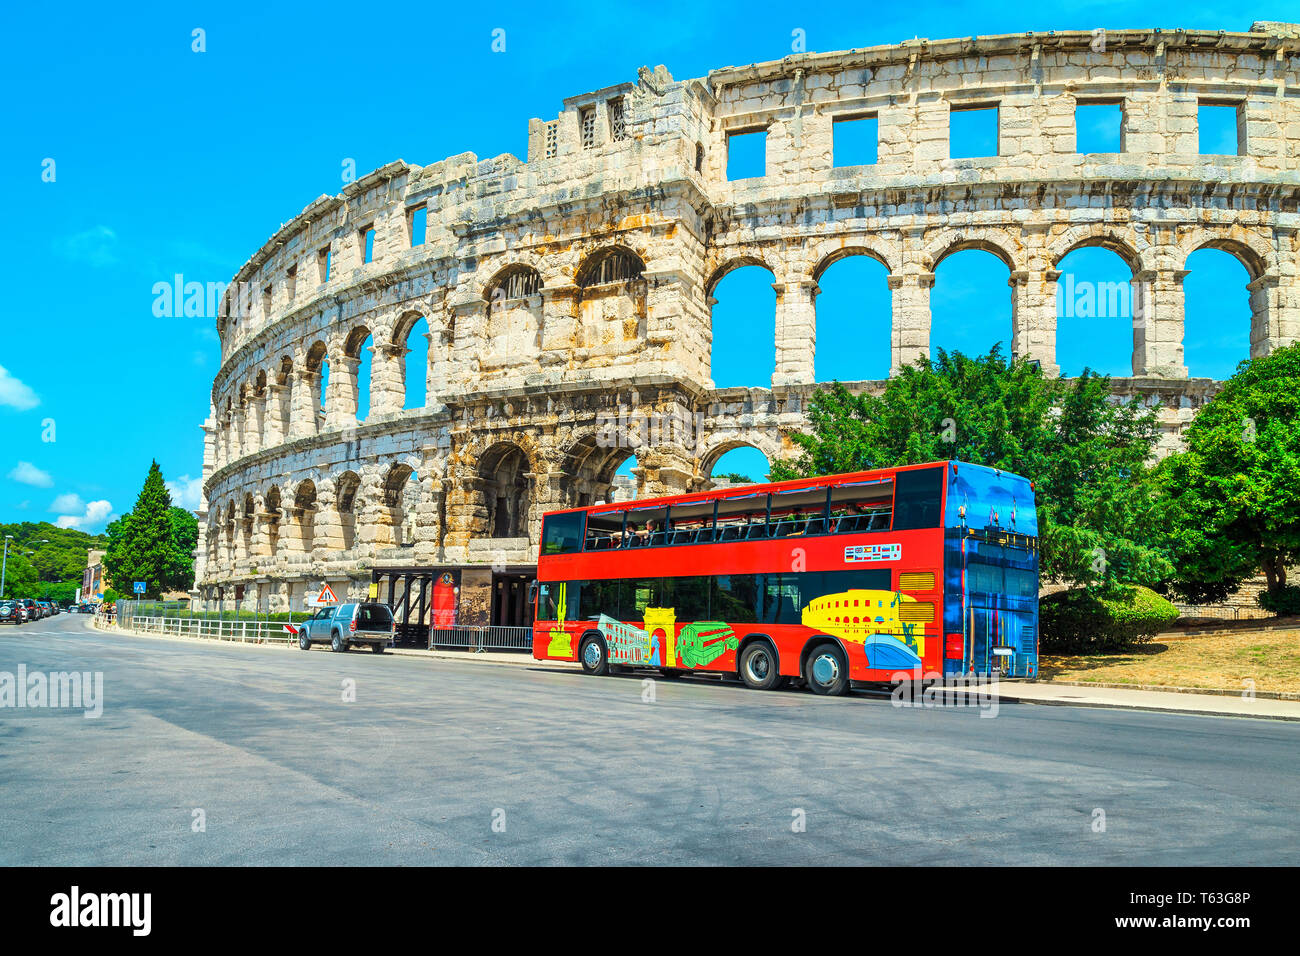 Spektakuläre alte historische Gebäude mit bunten Touristische Bus. Blick auf die Straße mit dem berühmten Römischen Amphitheater (Arena) in Pula, Istrien penin Stockfoto